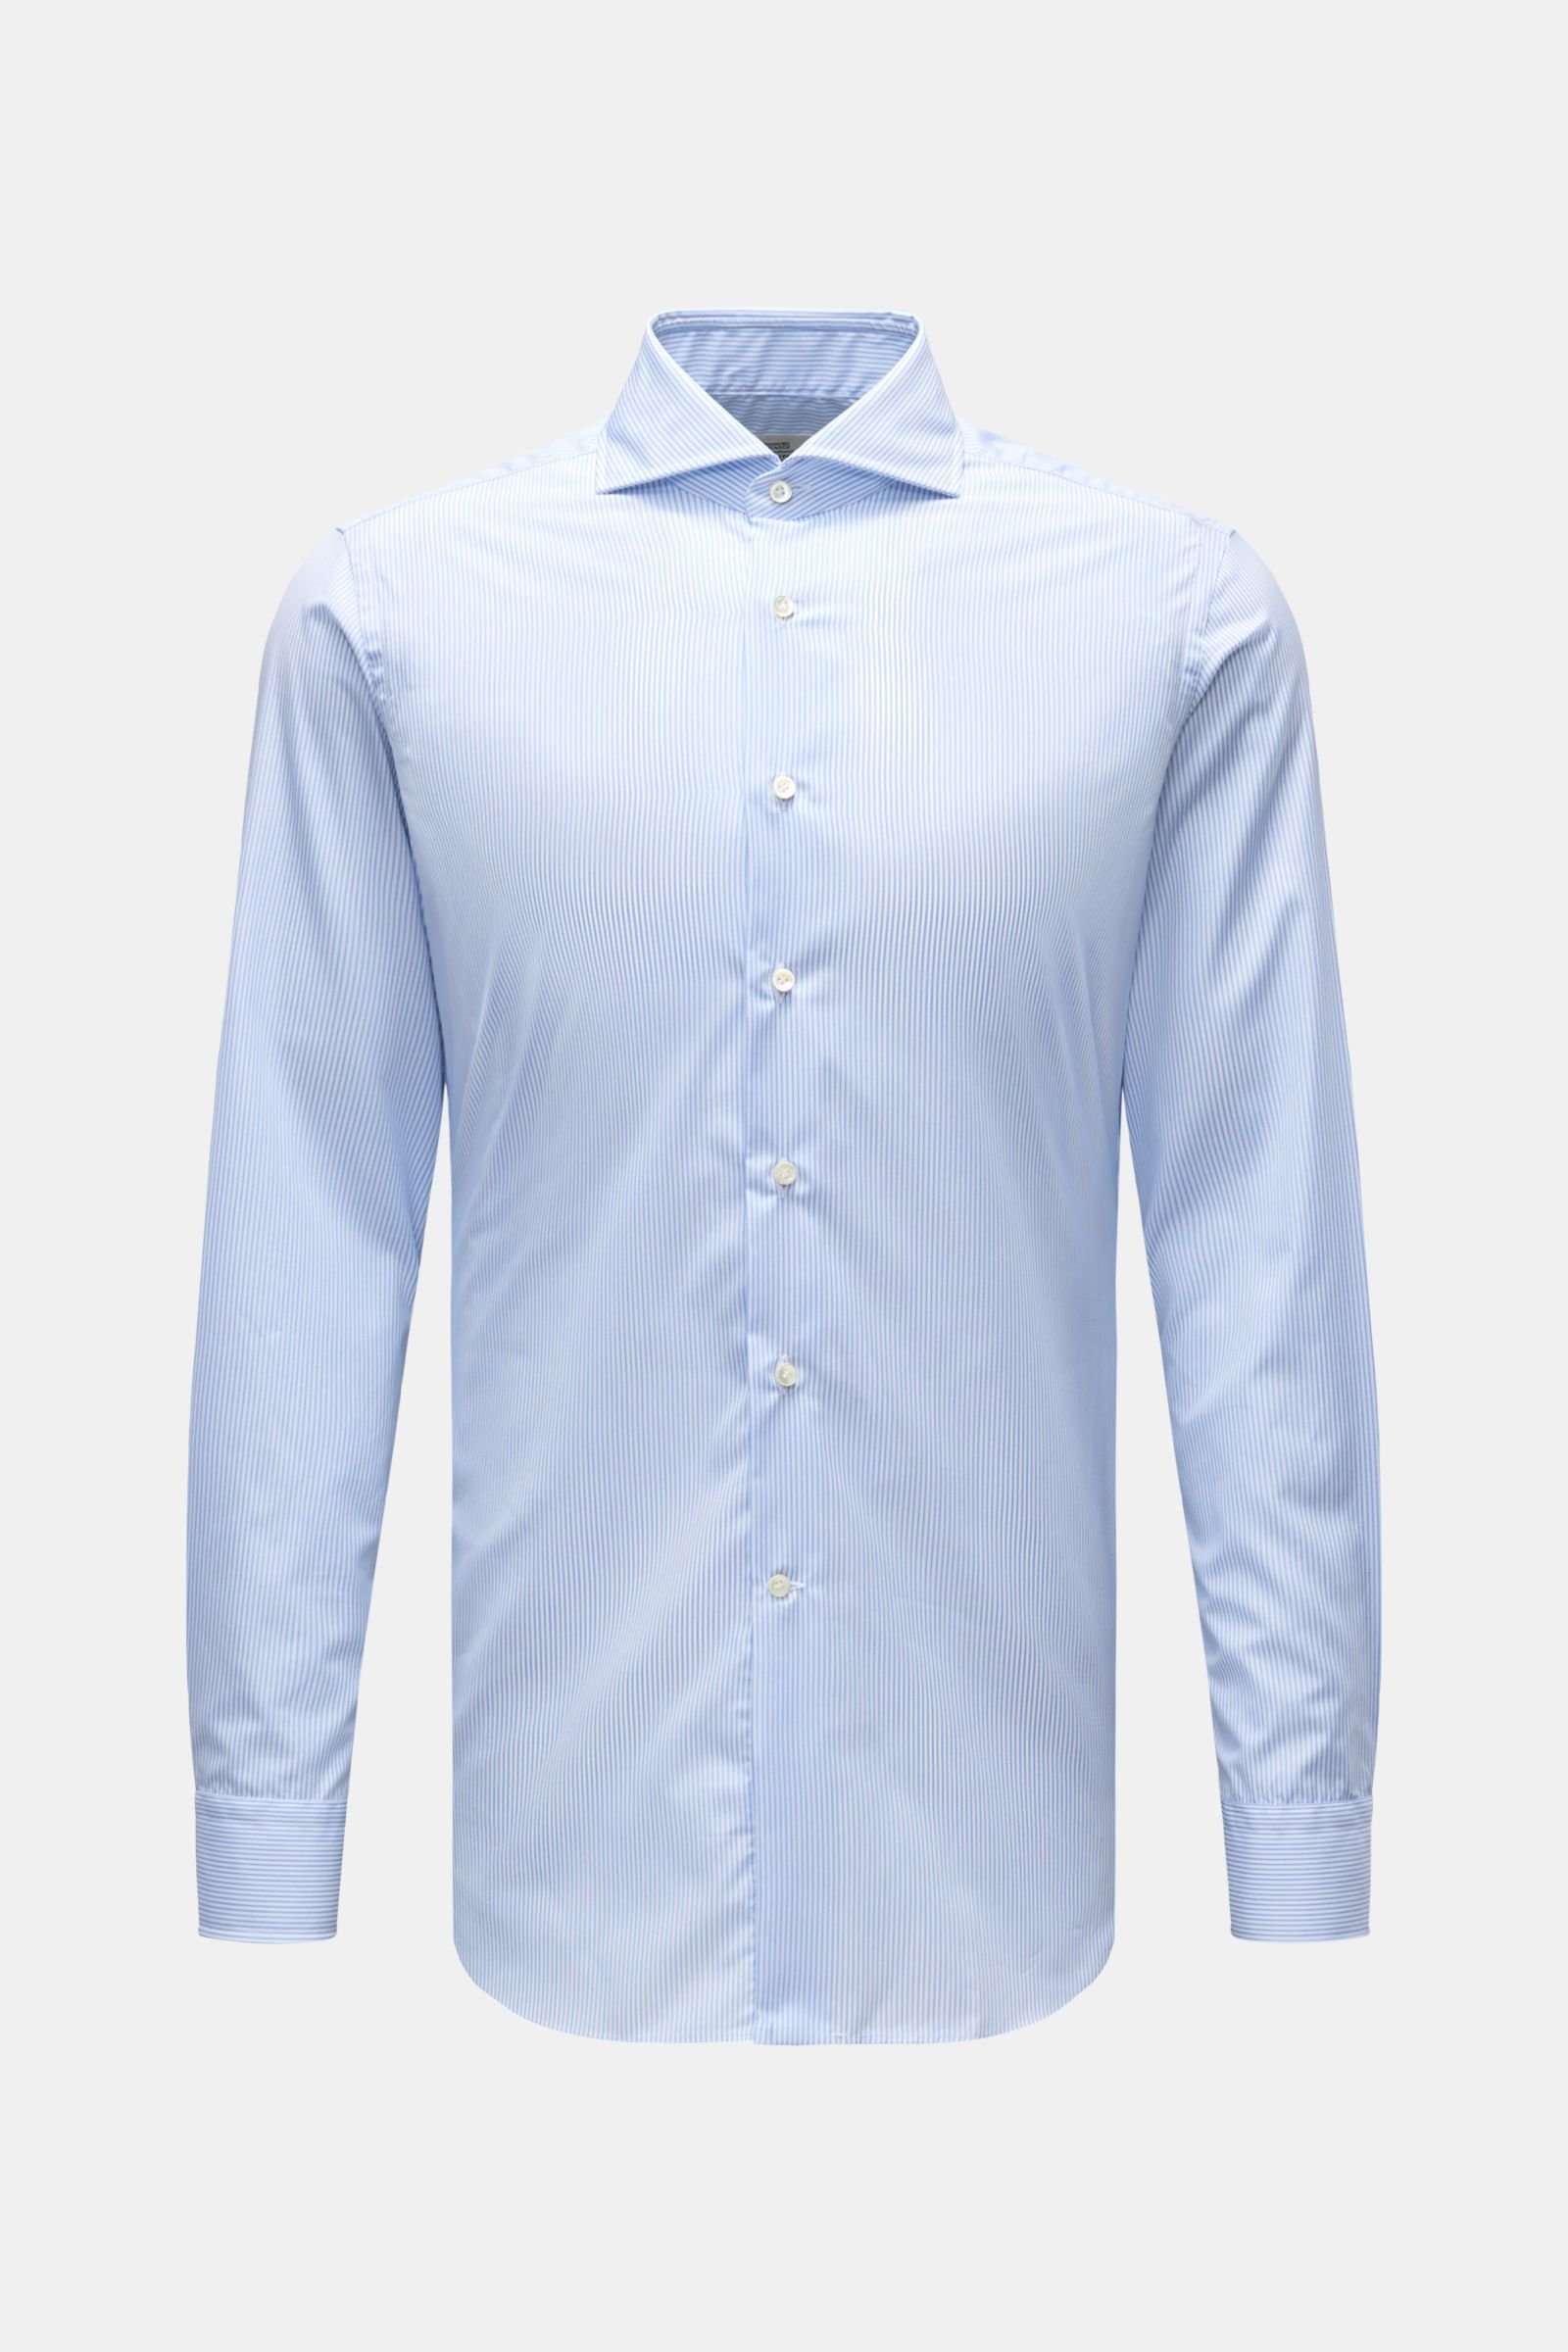 Business shirt shark collar light blue/white striped